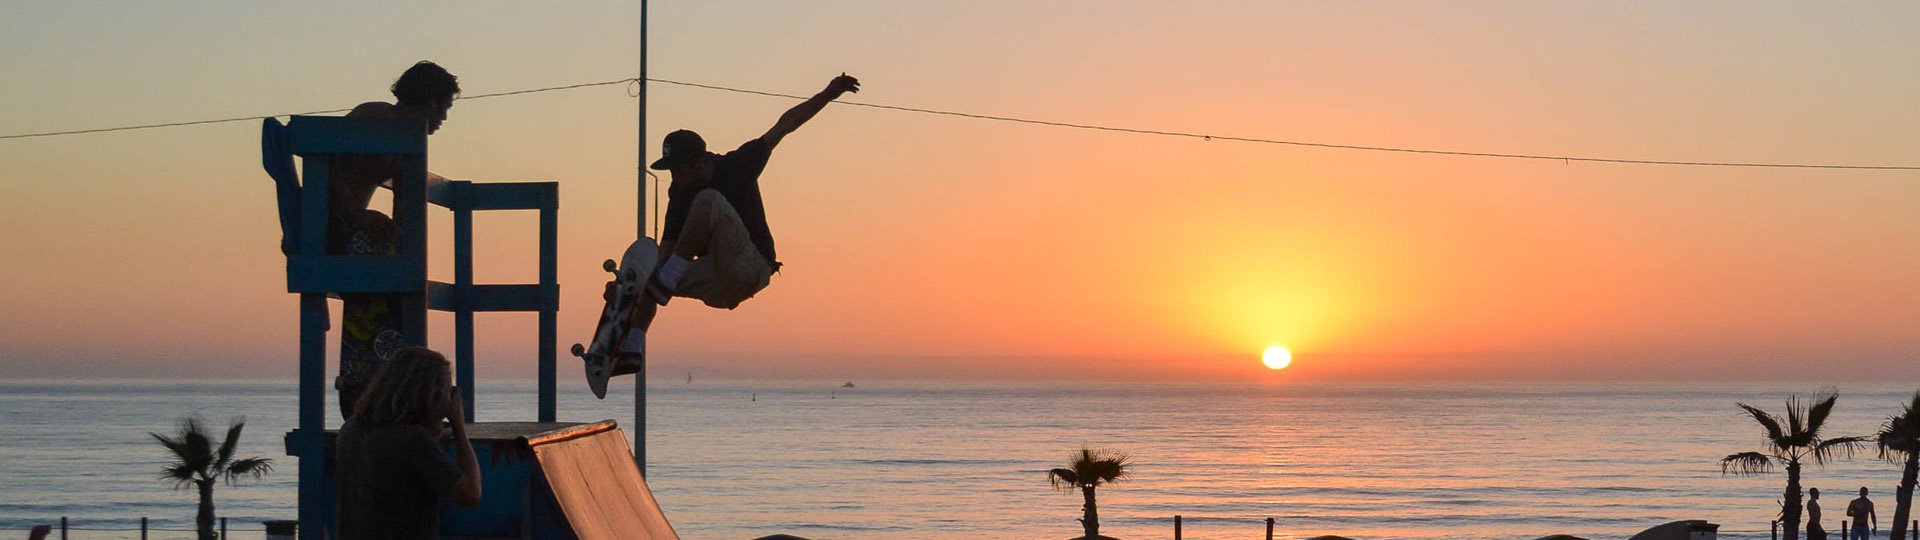 Skateboarder on halfpipe in Baja